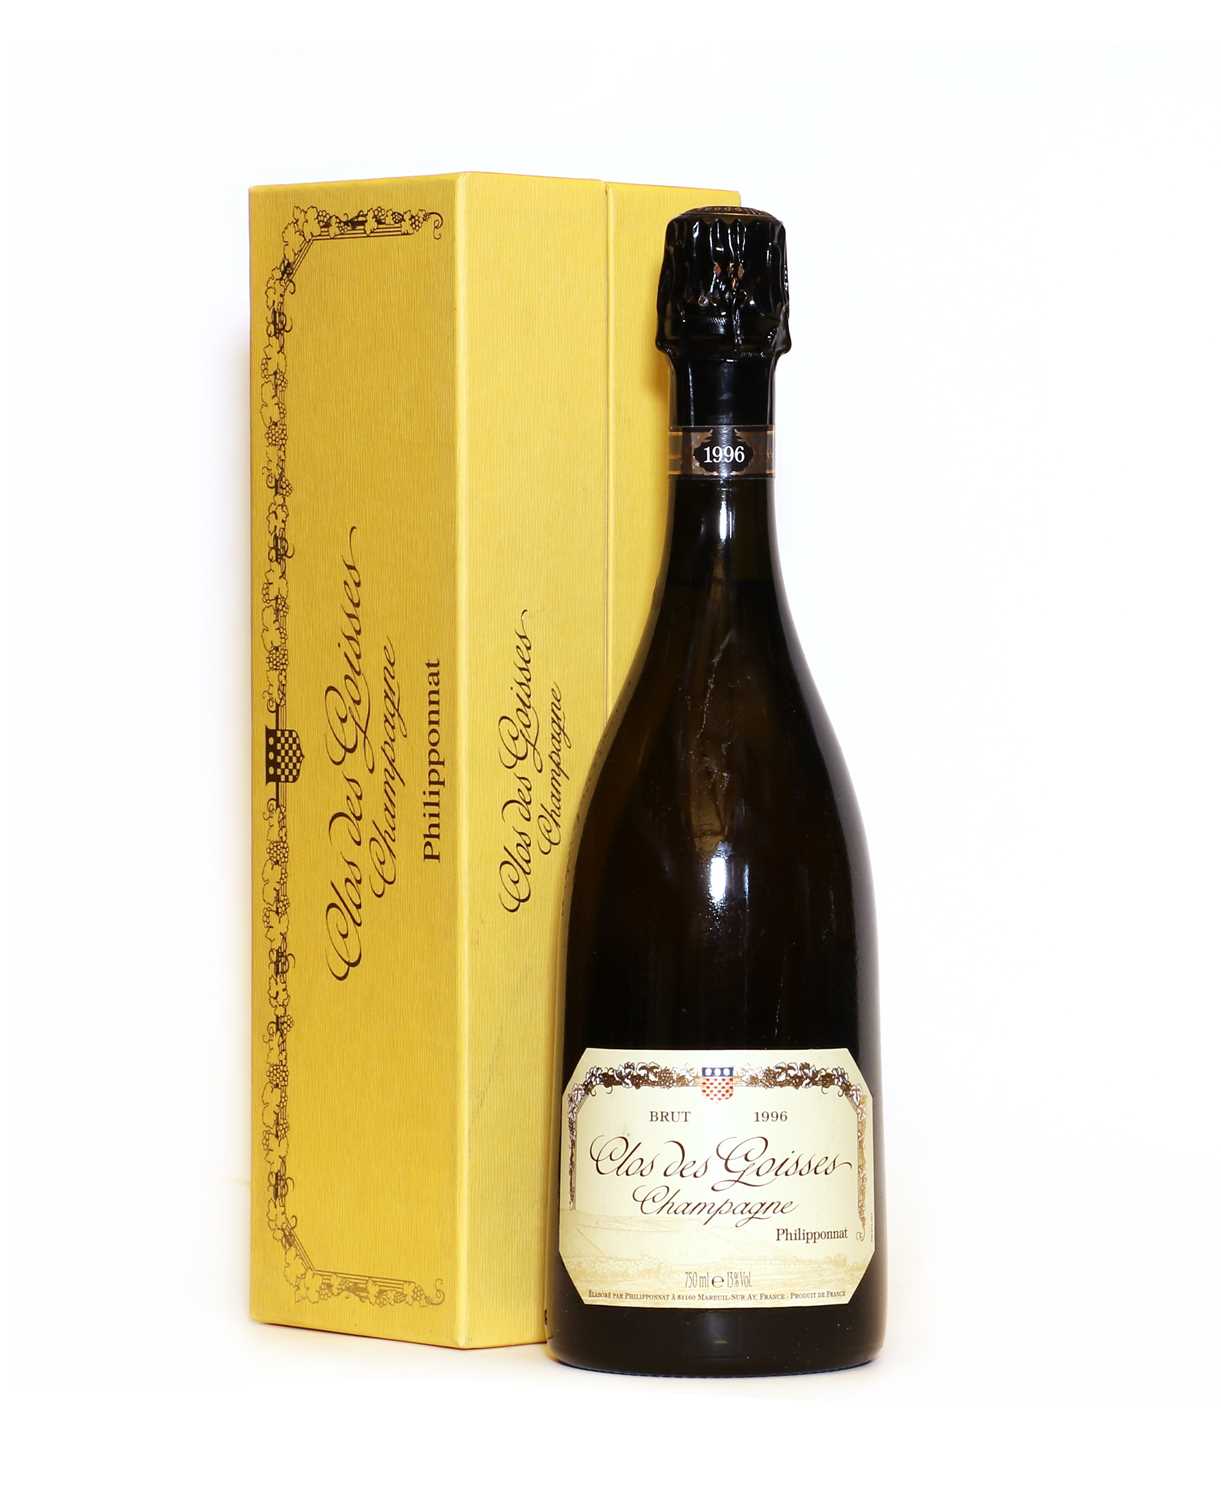 Lot 14 - Clos des Goisses, Philipponnat, 1996 one bottle (boxed)